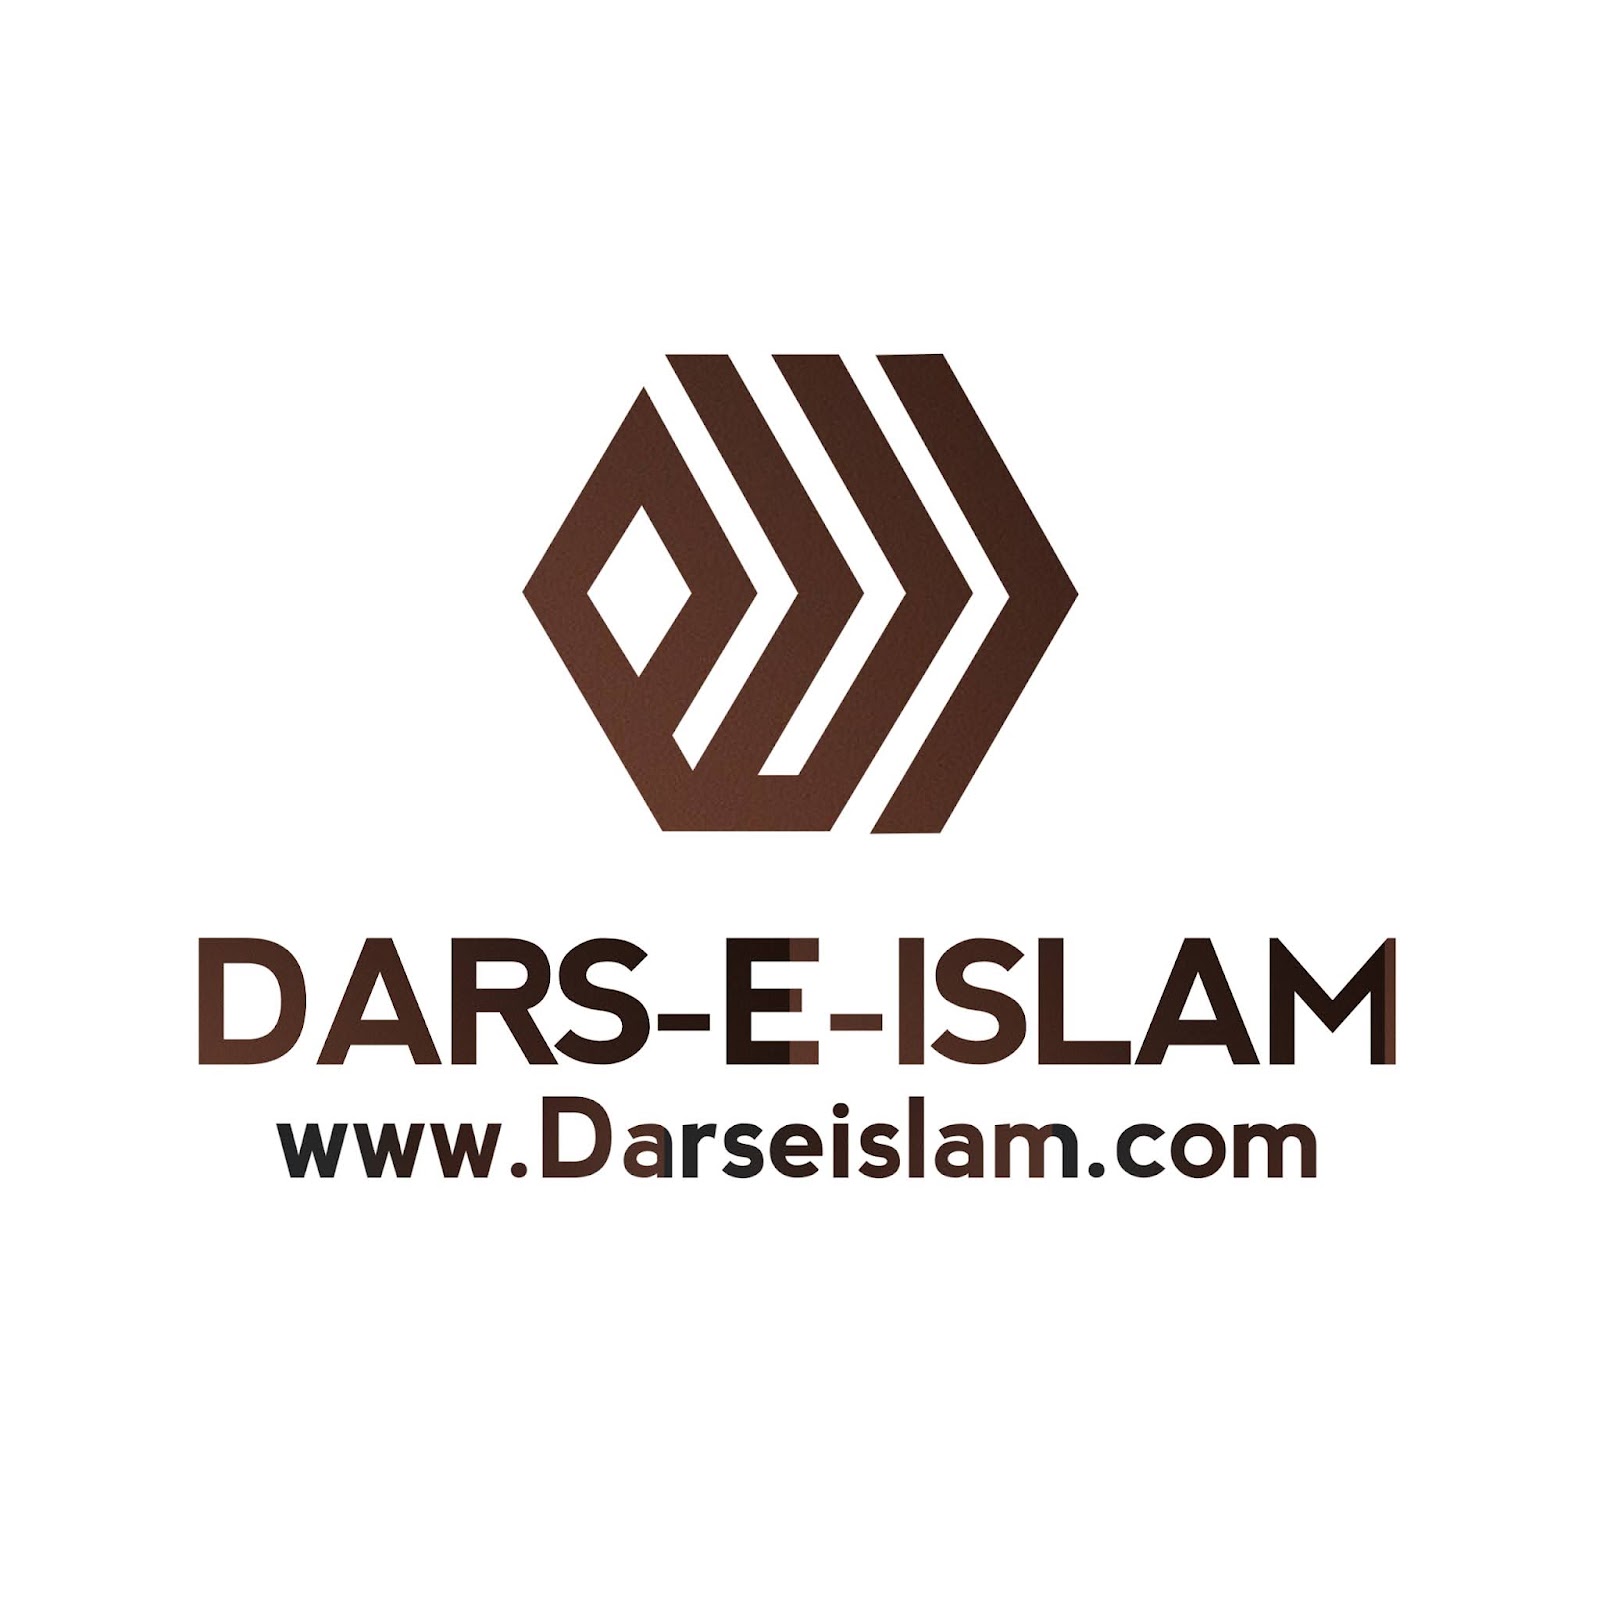 Dars-e-Islam